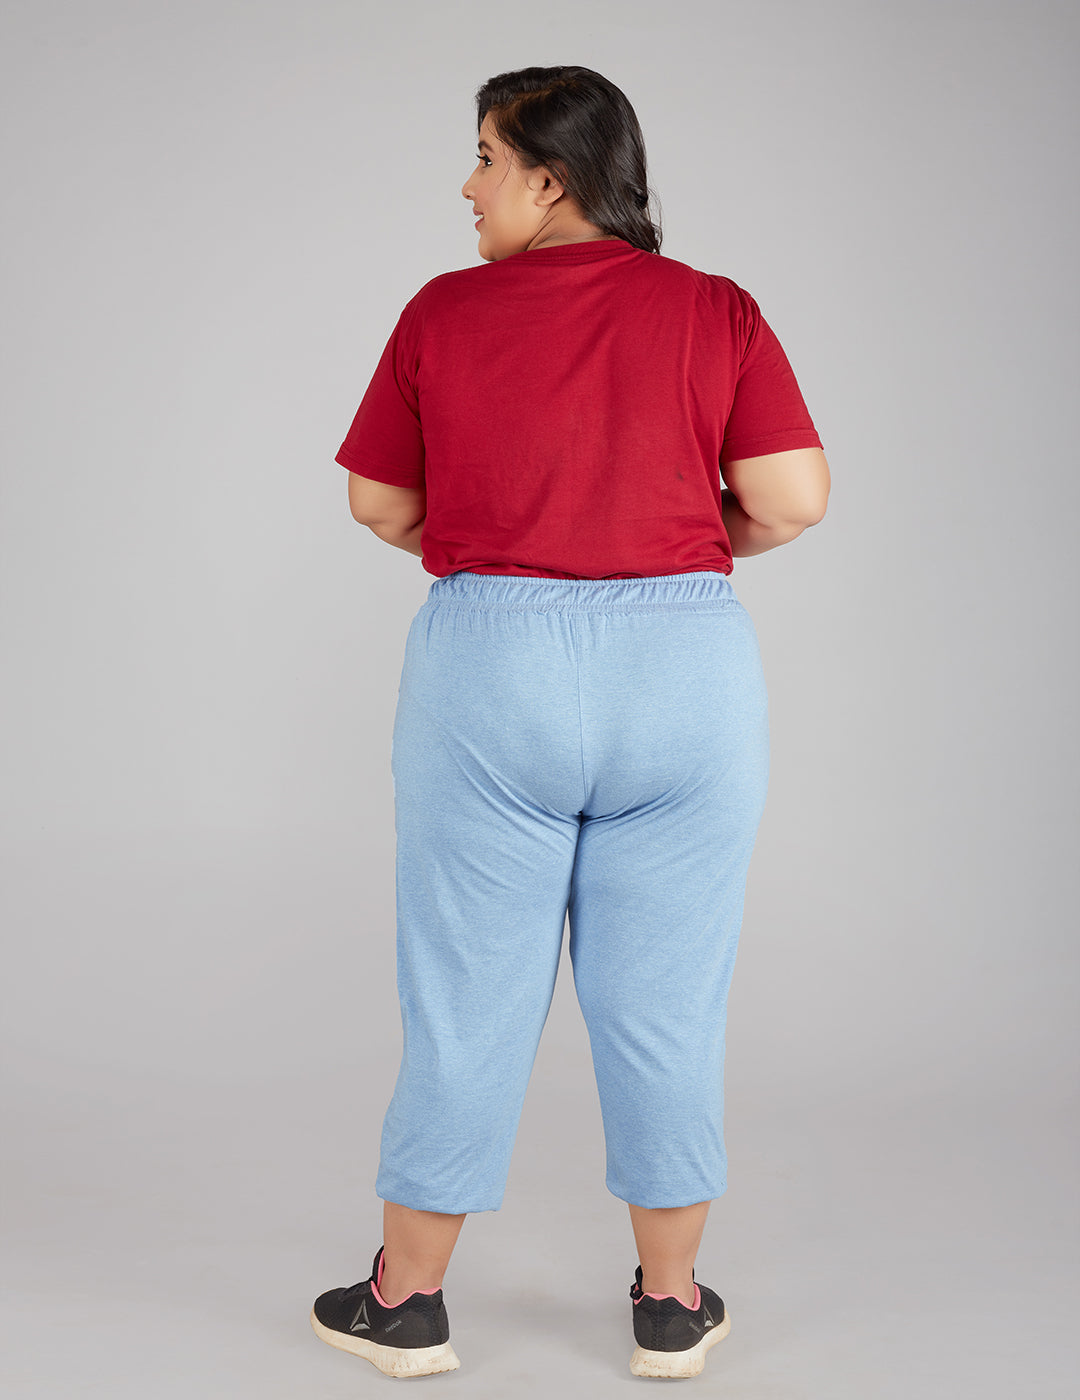 Massio Women's Size 6 Long Capris Pants Blue Slacks Flat Front Cuffs Curvy  Hip